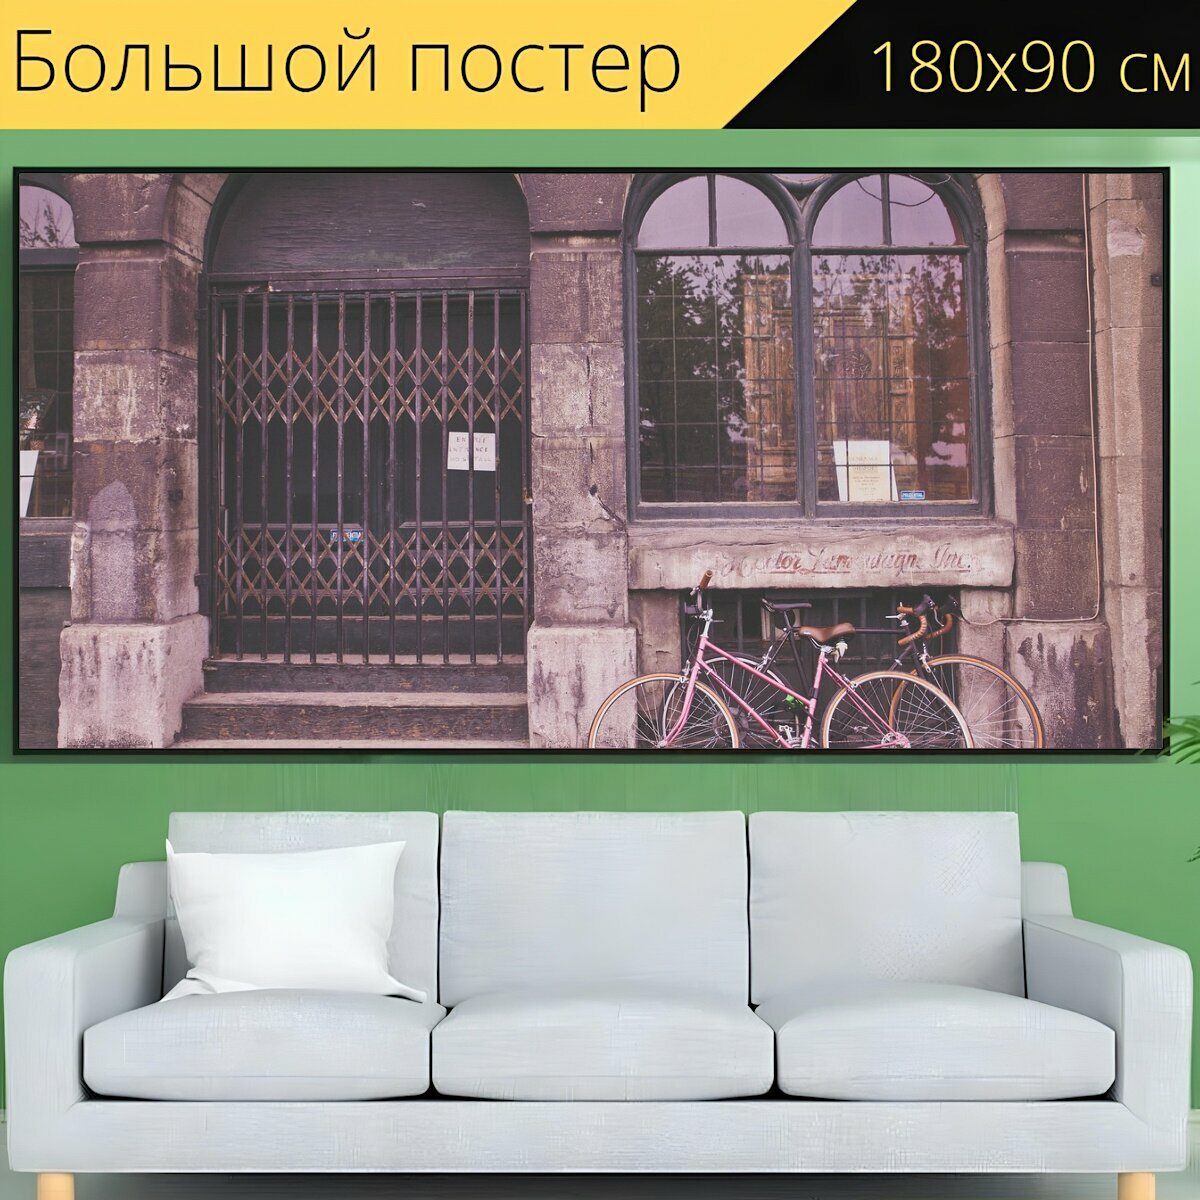 Большой постер "Велосипед, город, улицы" 180 x 90 см. для интерьера